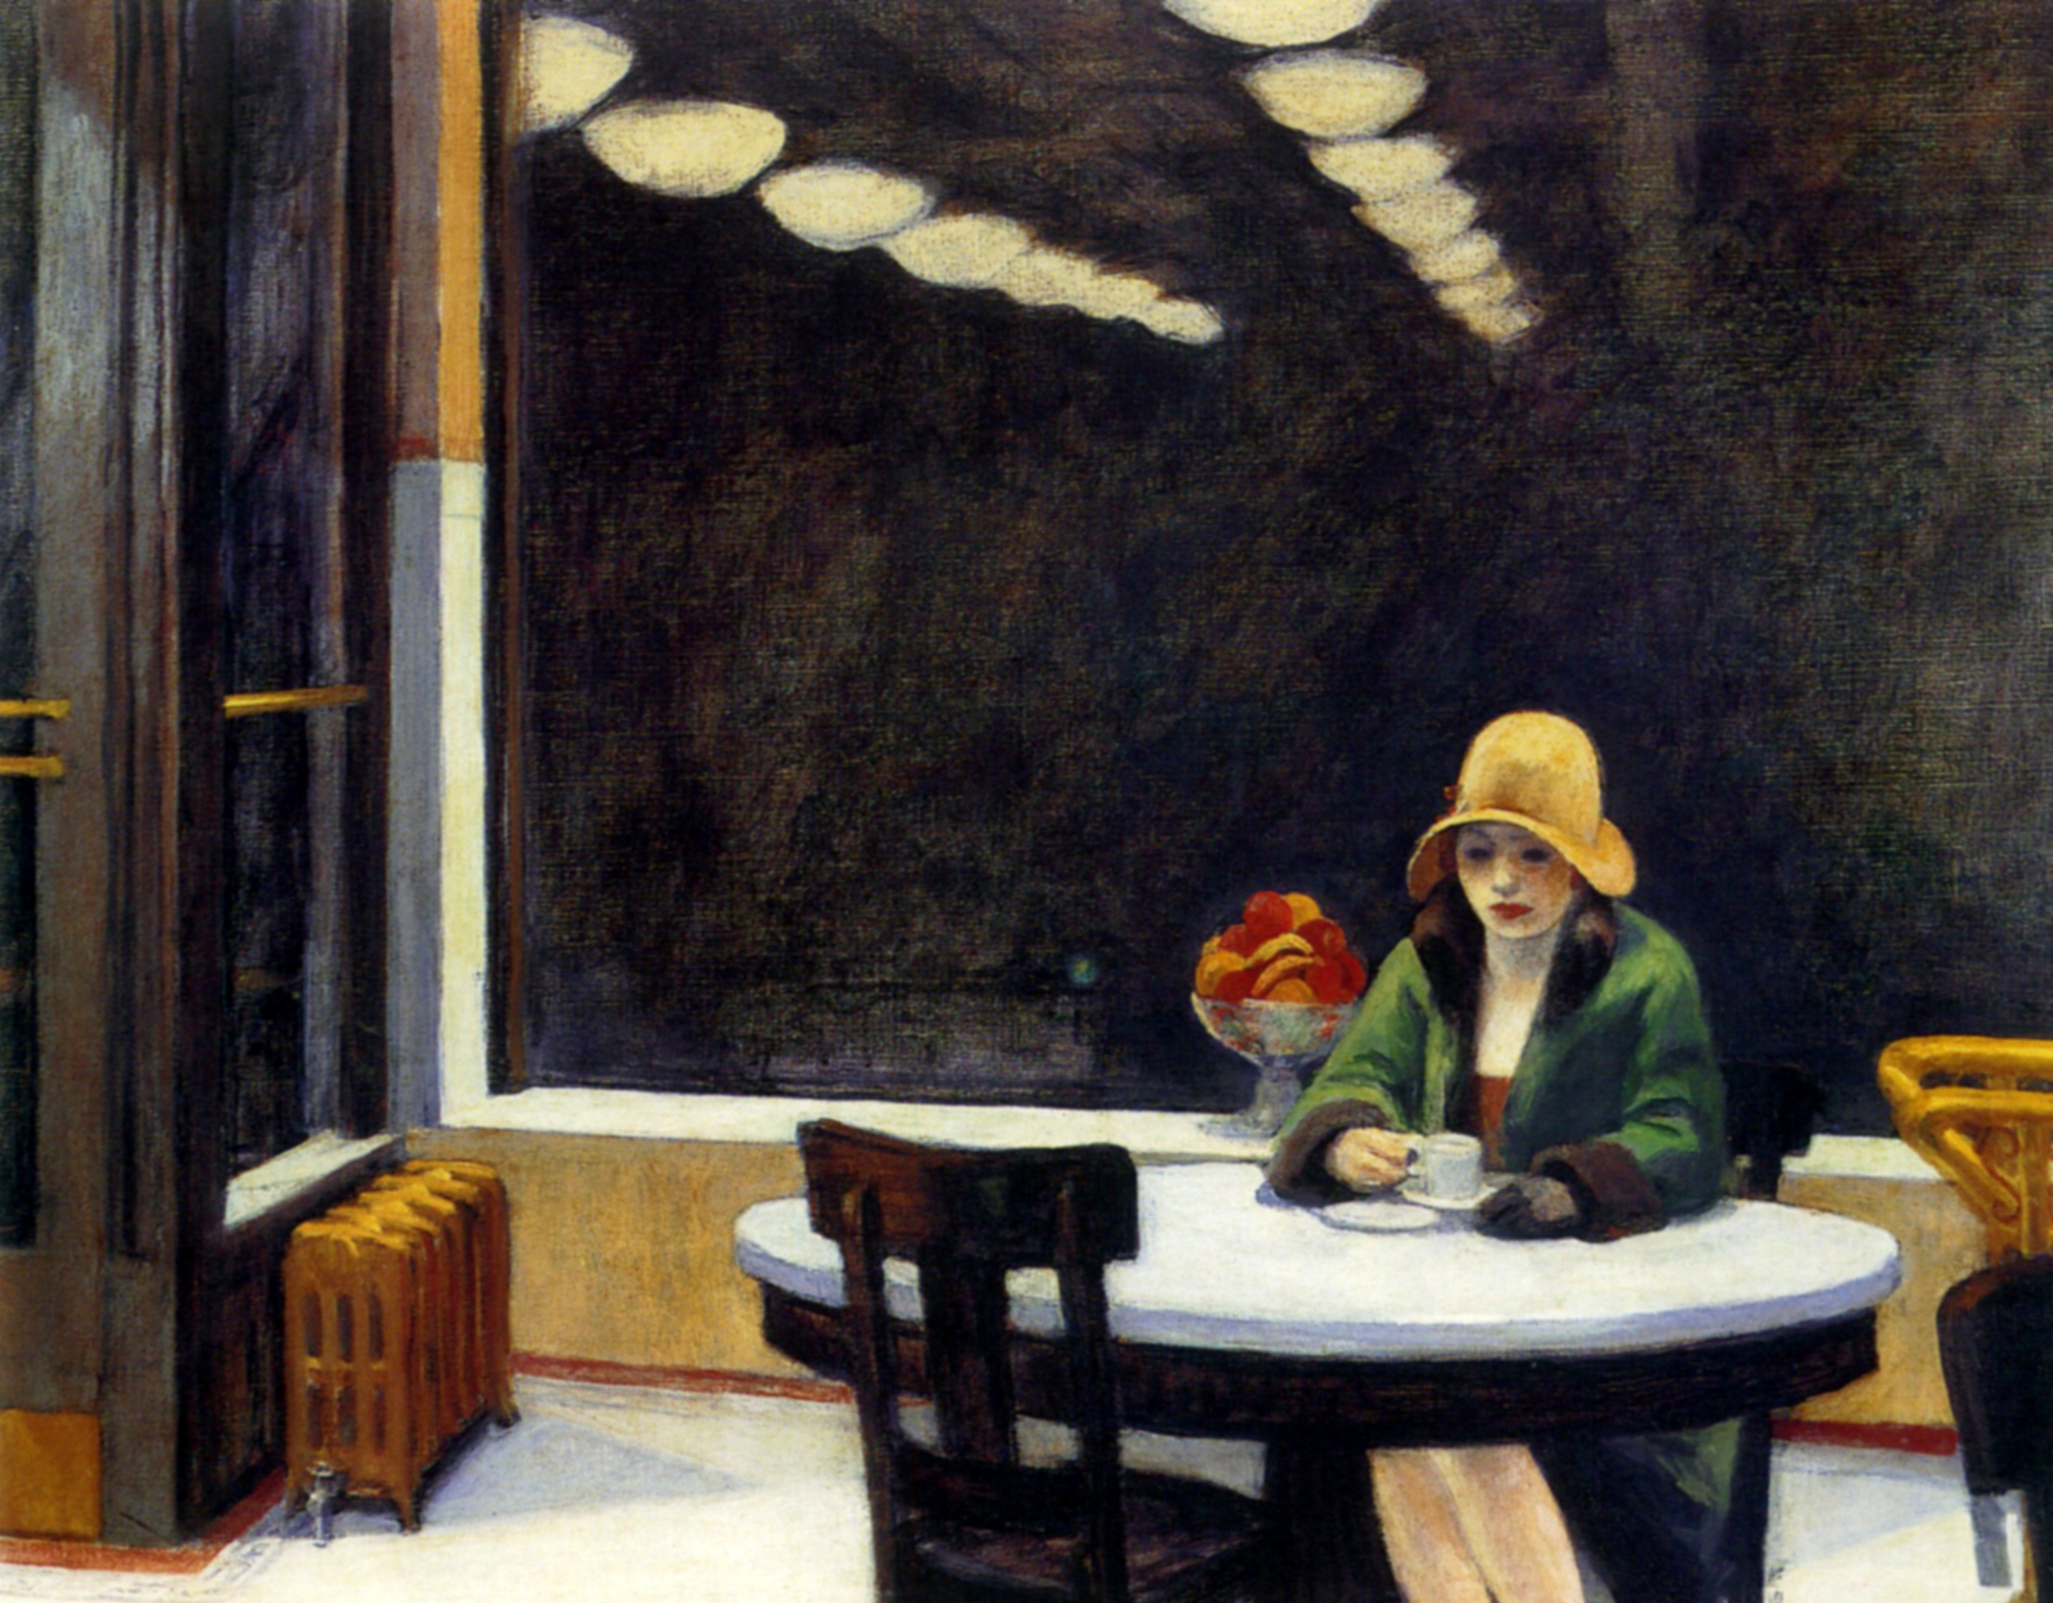 Edward Hopper, Automat, 1927, huile sur toile, 71,4 × 91,4 cm, Des Moines Art Center, Des Moines